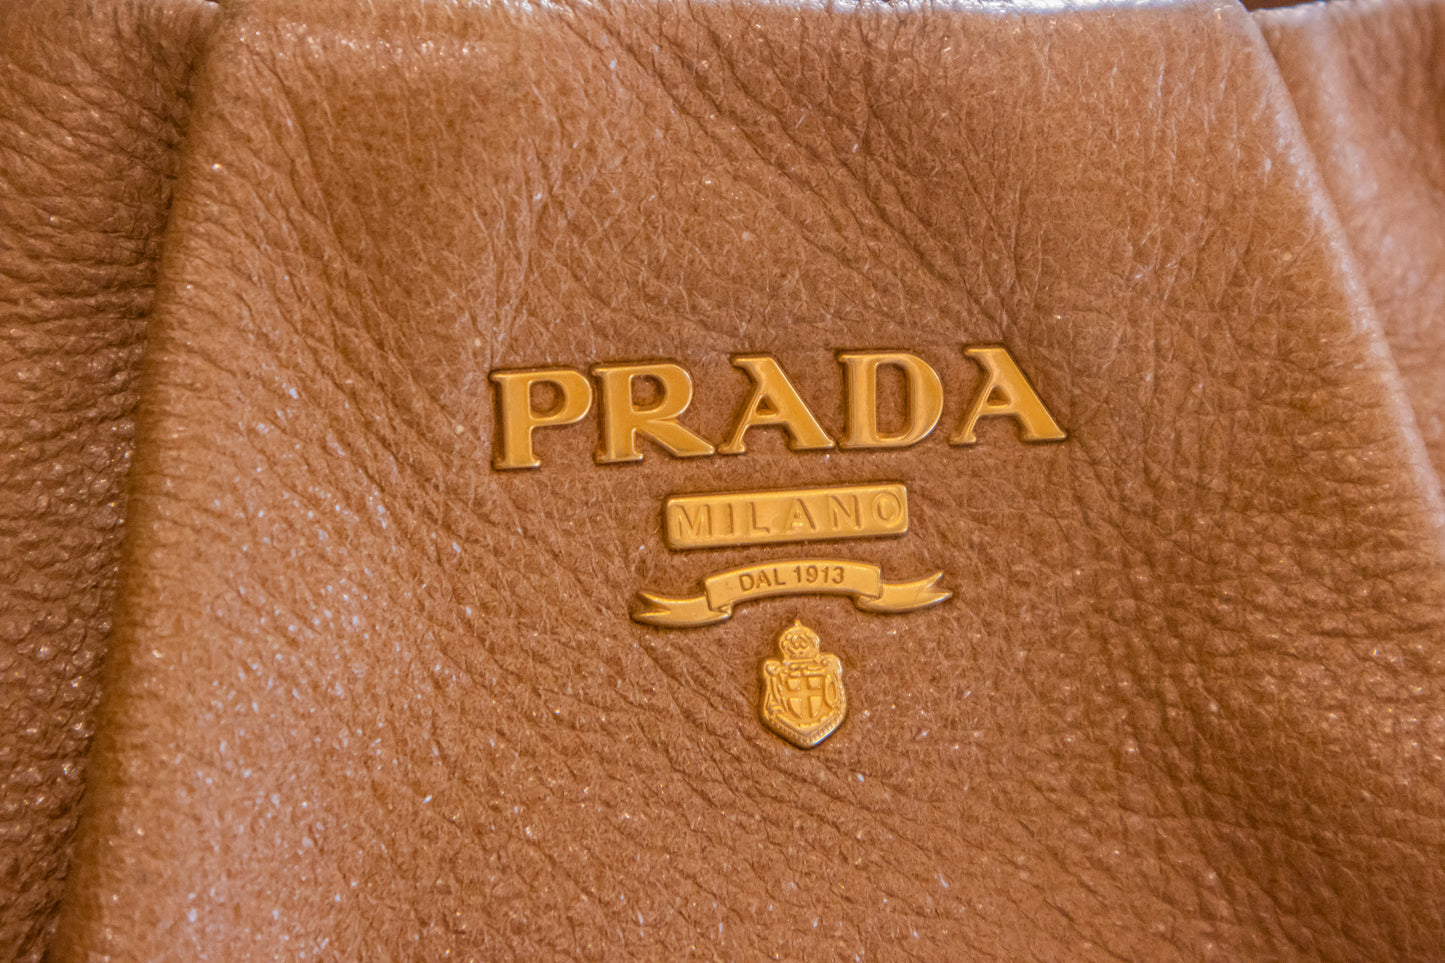 Prada - Handtasche